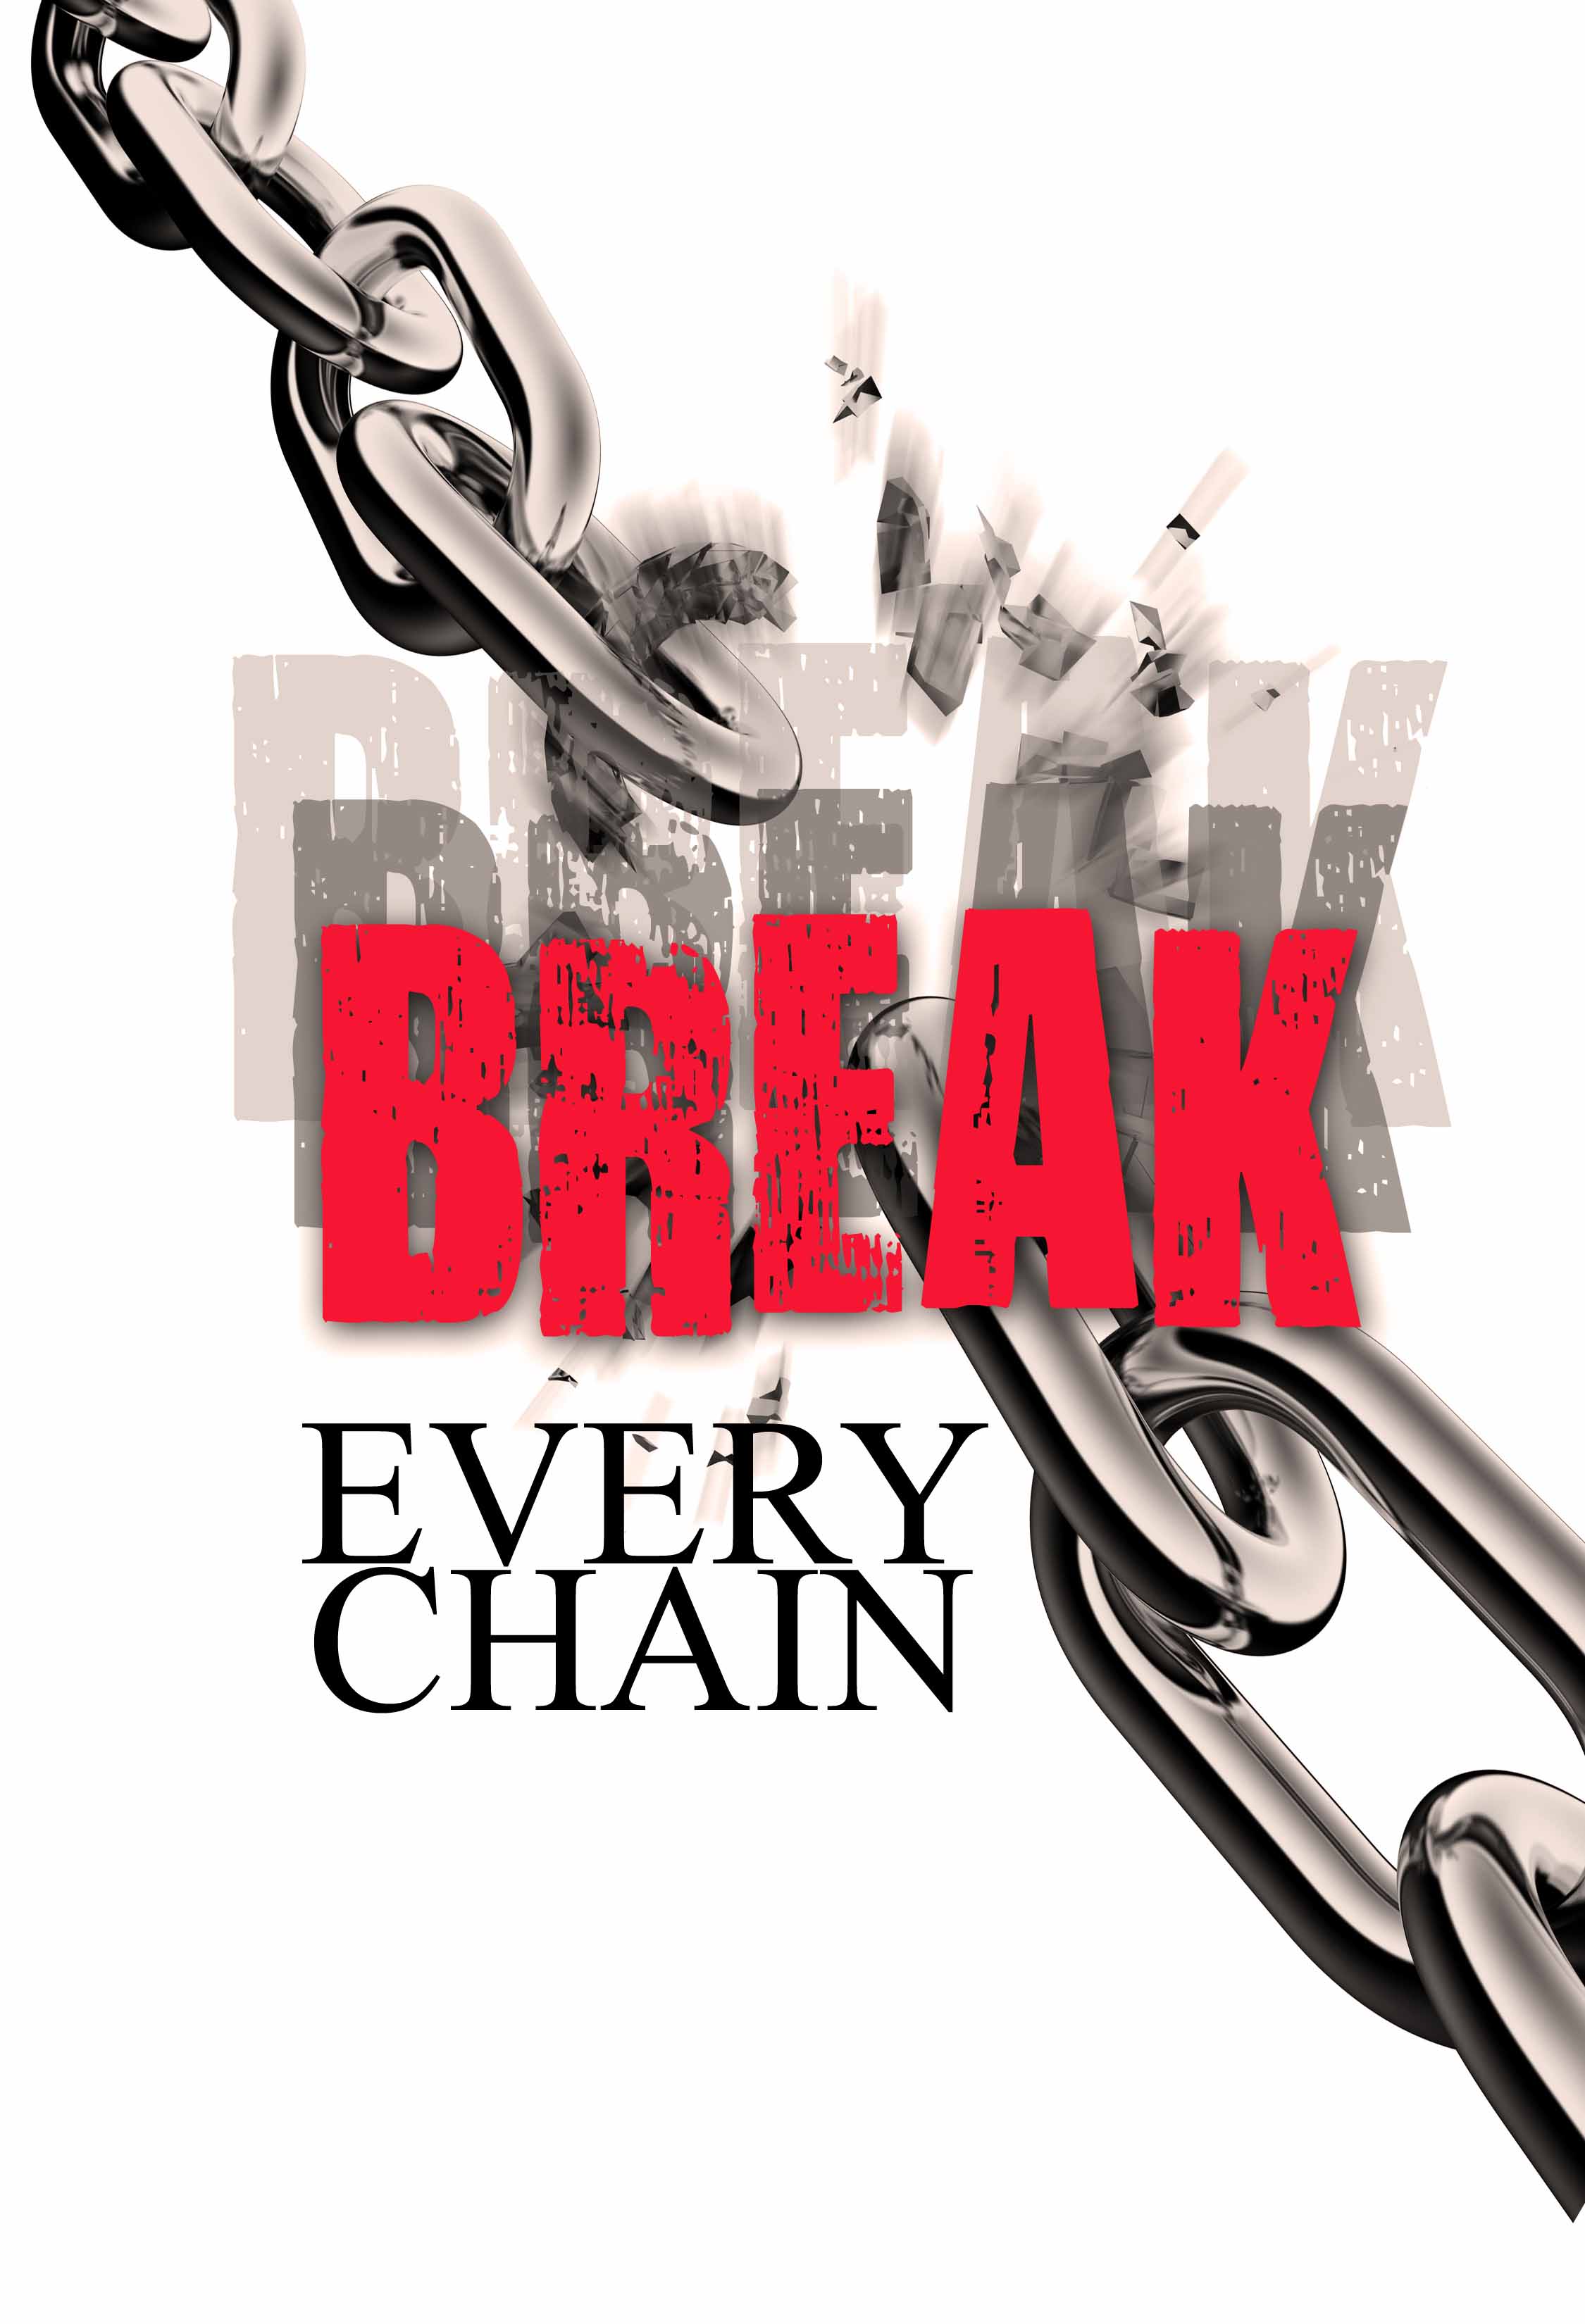 01-18-15 Break Every Chain - Guest Speaker Holly Holder